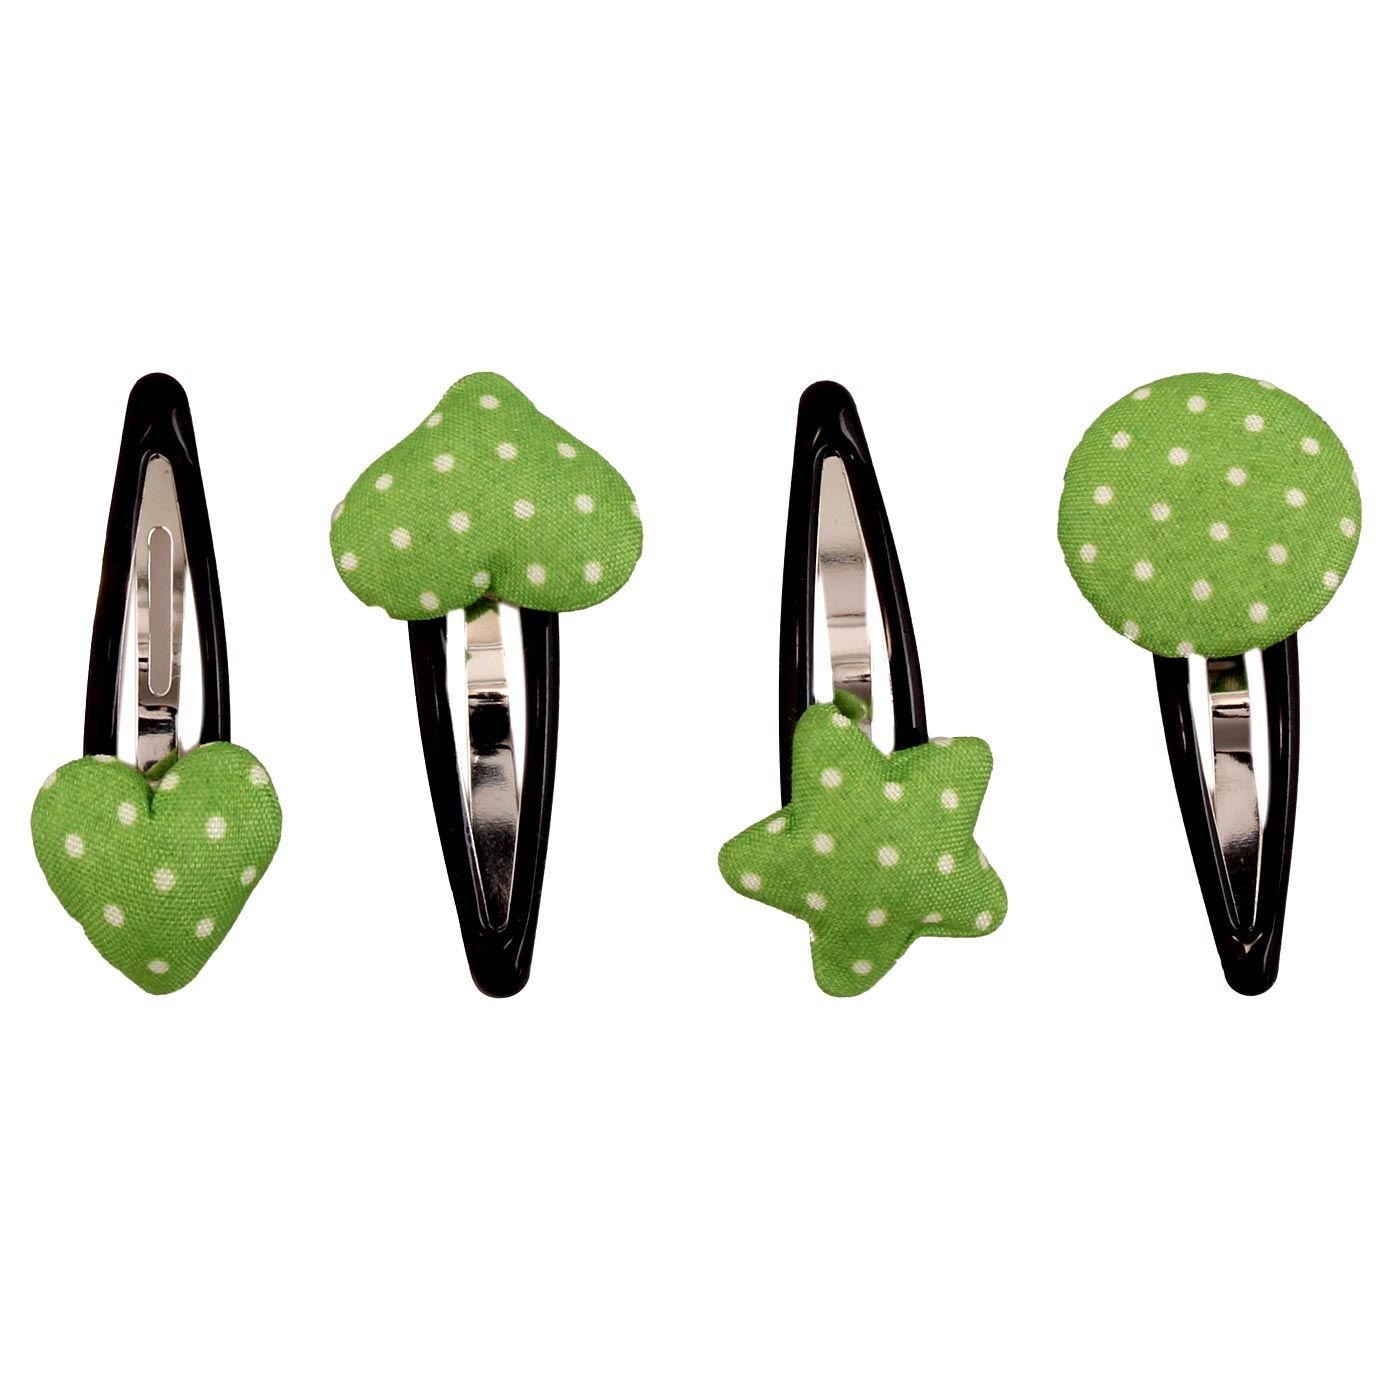 Bebecroc Polka Dot Fabric Snap Clip(4pcs) Light Green - 2